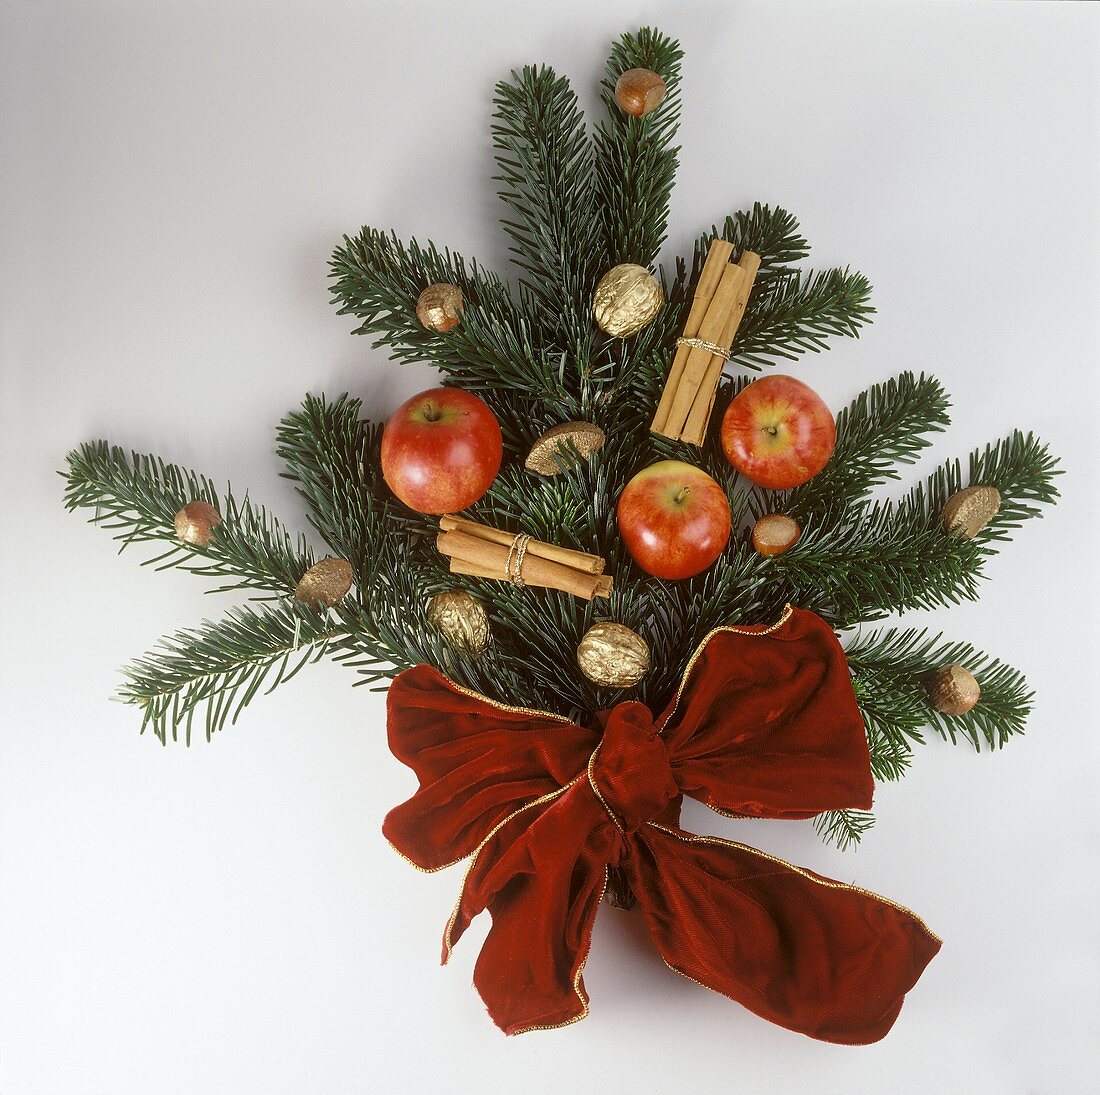 Weihnachtliche Deko aus Tannenzweigen, Äpfeln, Goldnüssen etc